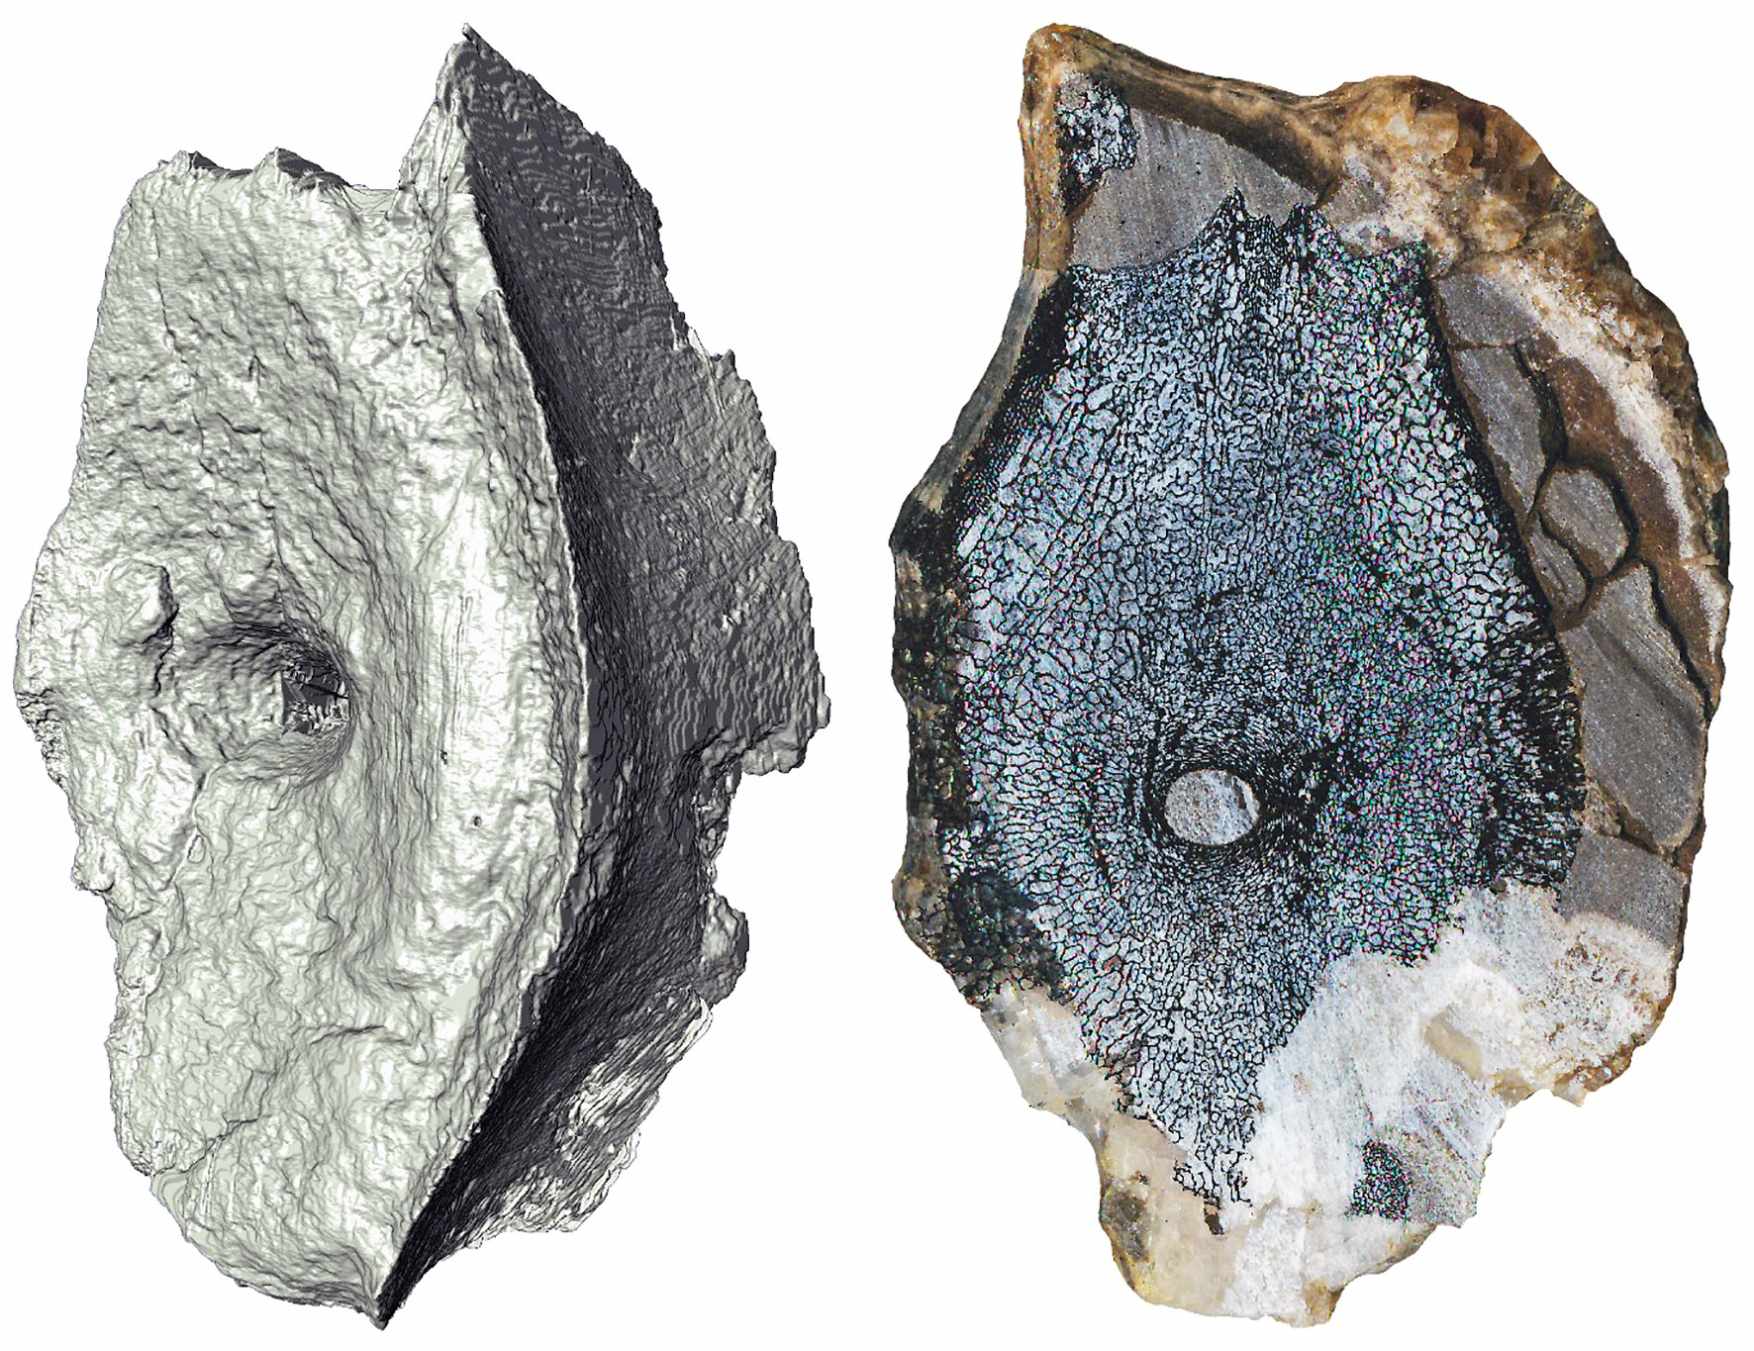 컴퓨터 단층 촬영 이미지(왼쪽)와 현생 고래처럼 해면질을 가진 어룡 척추의 내부 뼈 구조를 보여주는 단면.